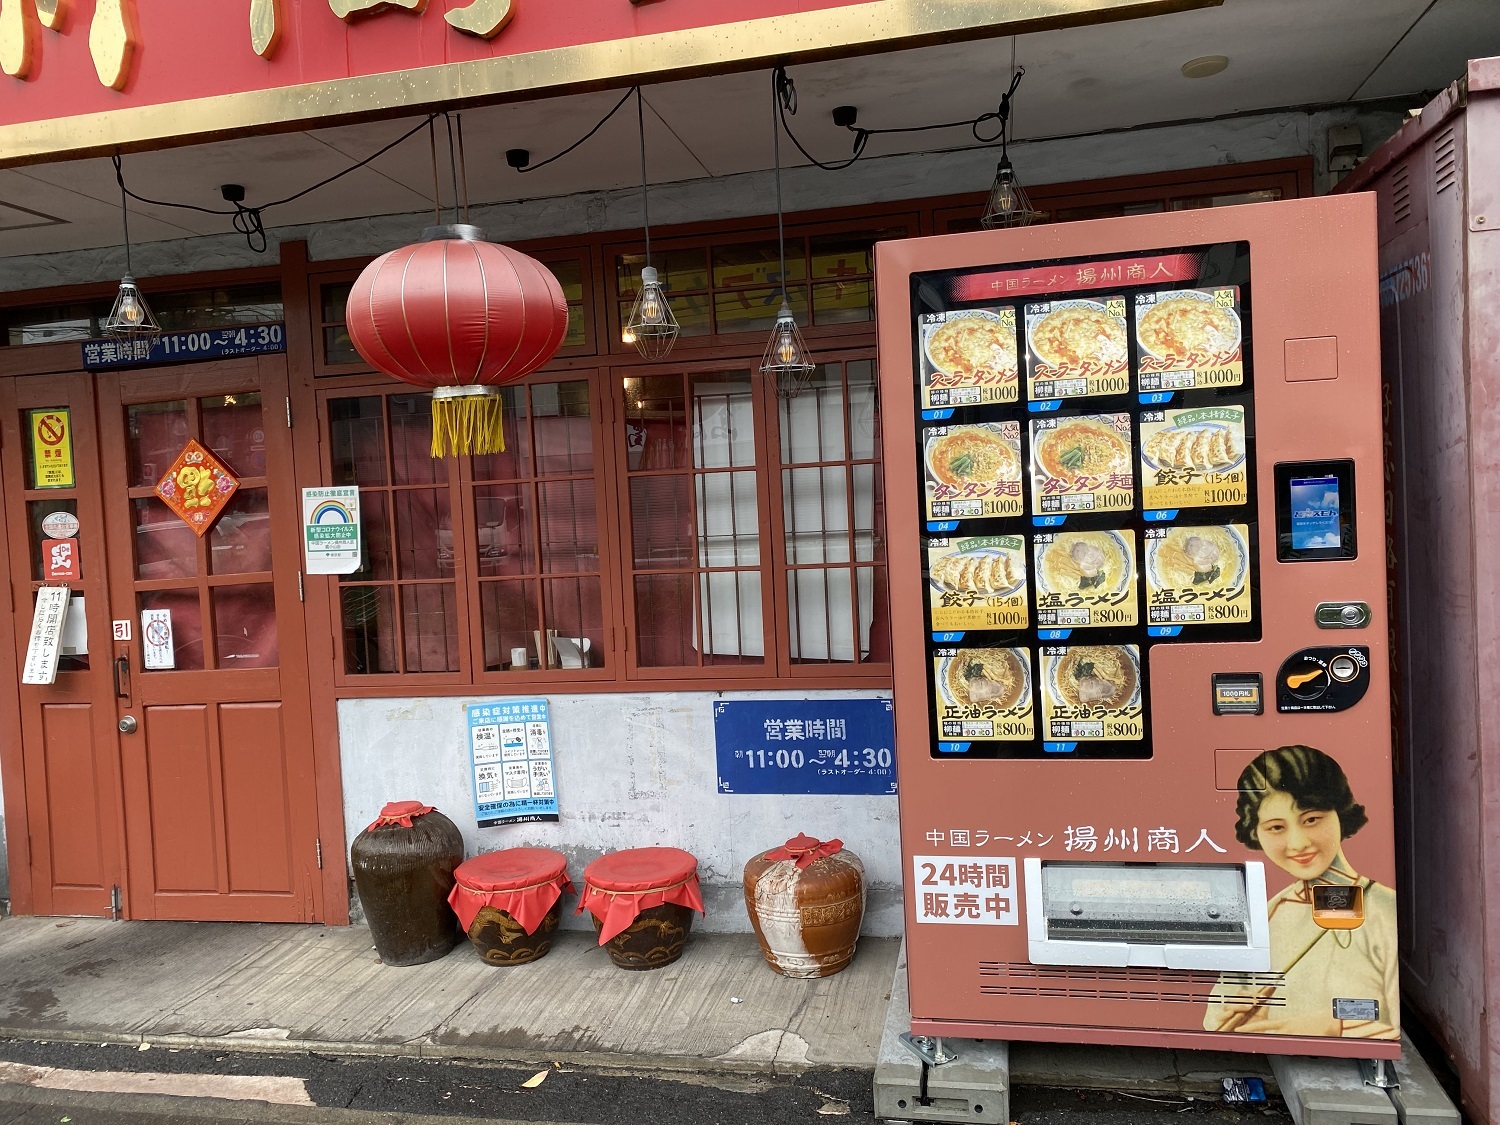 「中国ラーメン 揚州商人 武蔵小山店」が冷凍自販機を設置